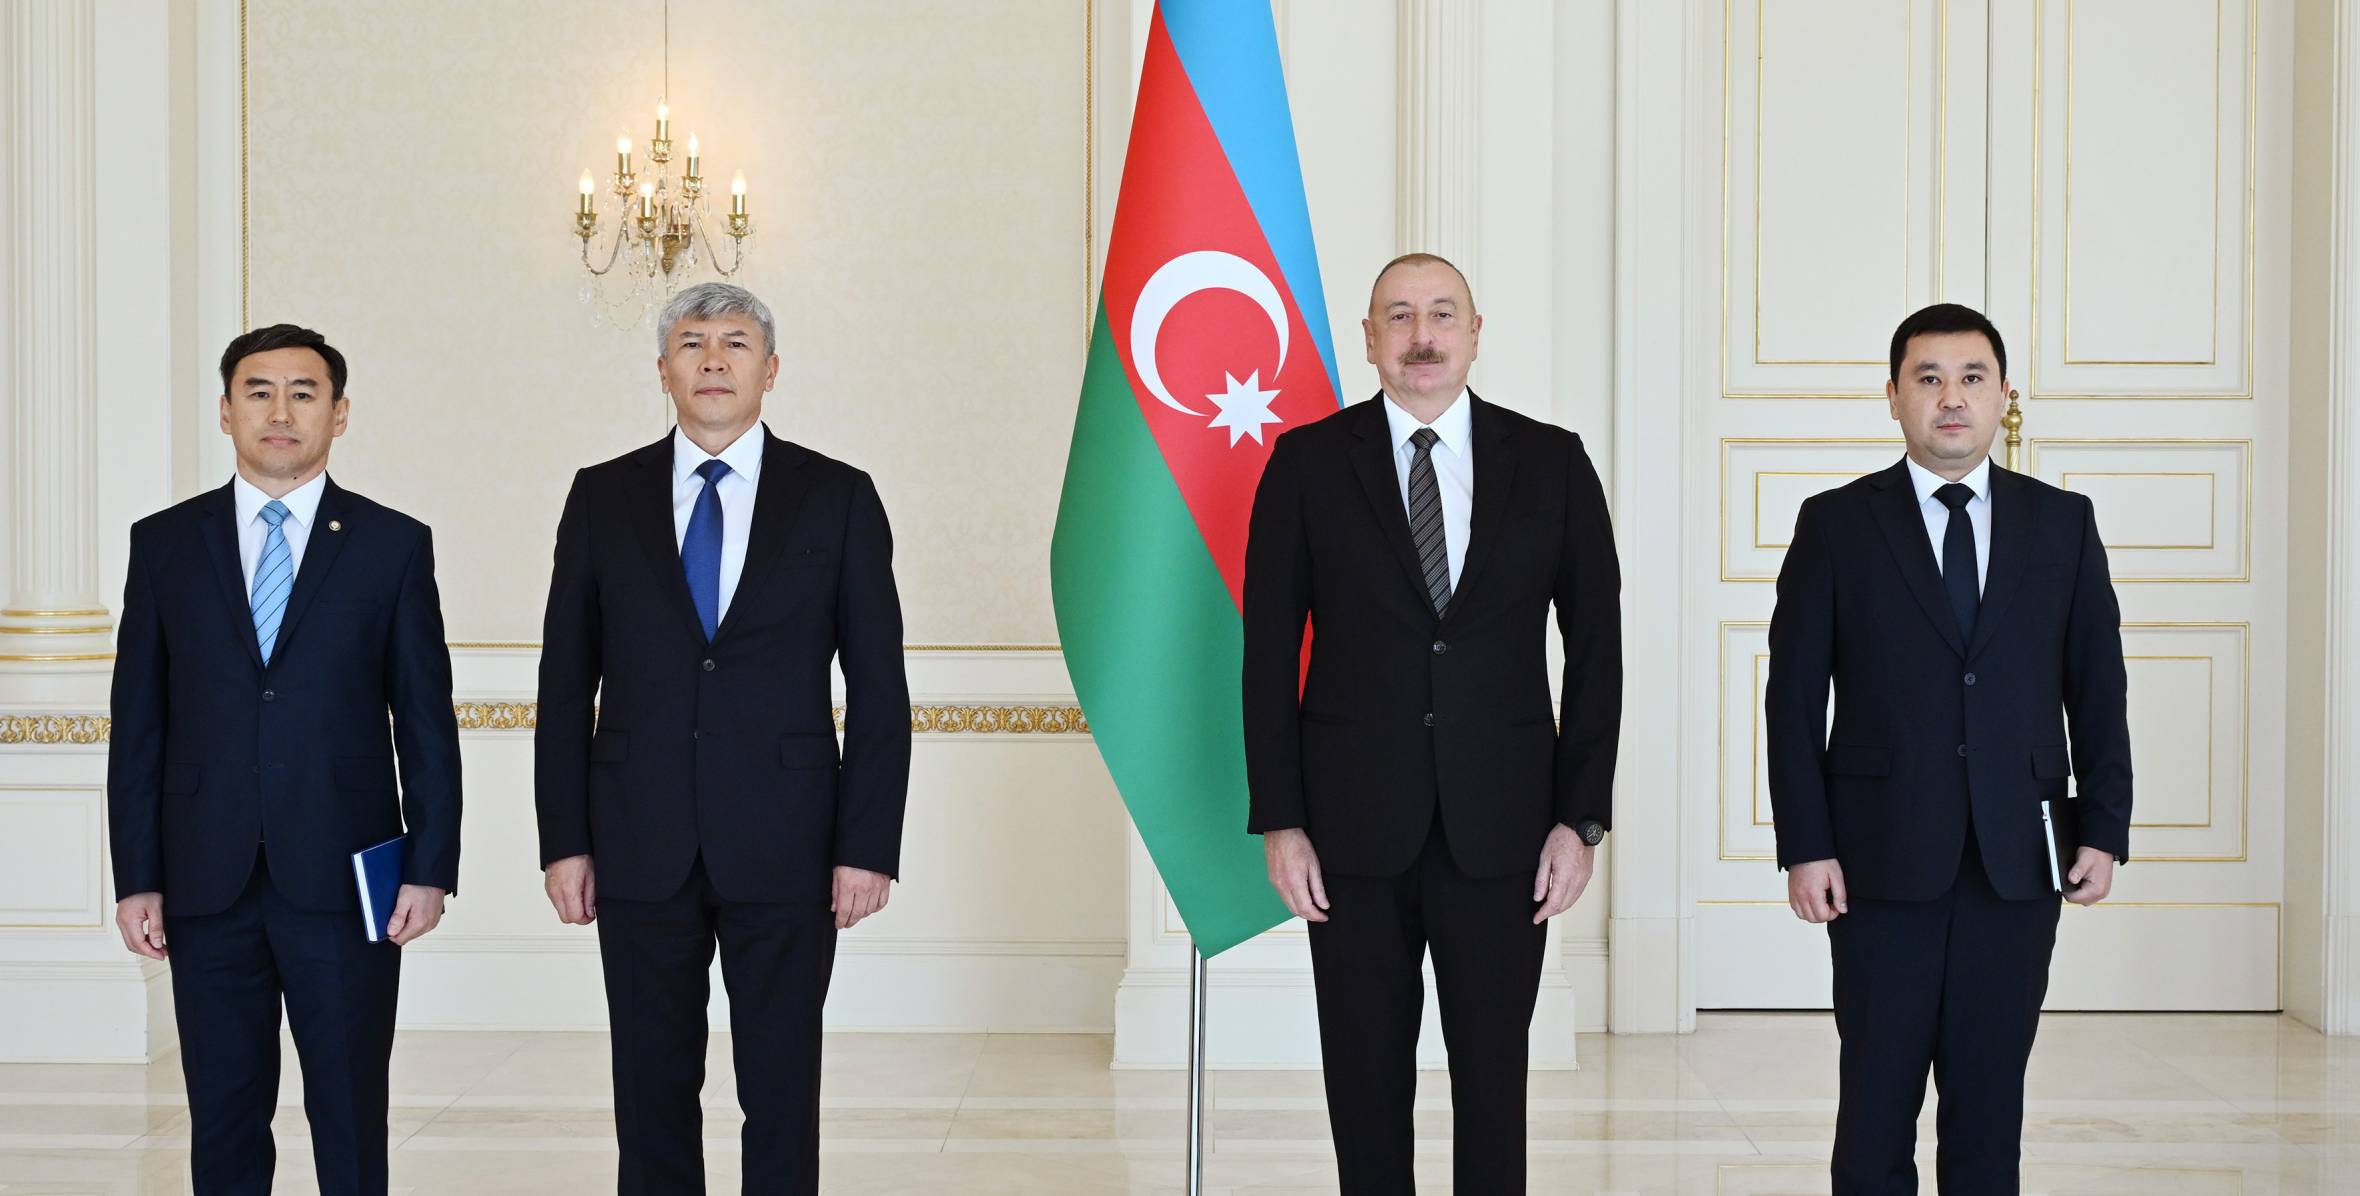 Ильхам Алиев принял верительные грамоты новоназначенного посла Кыргызской Республики в нашей стране